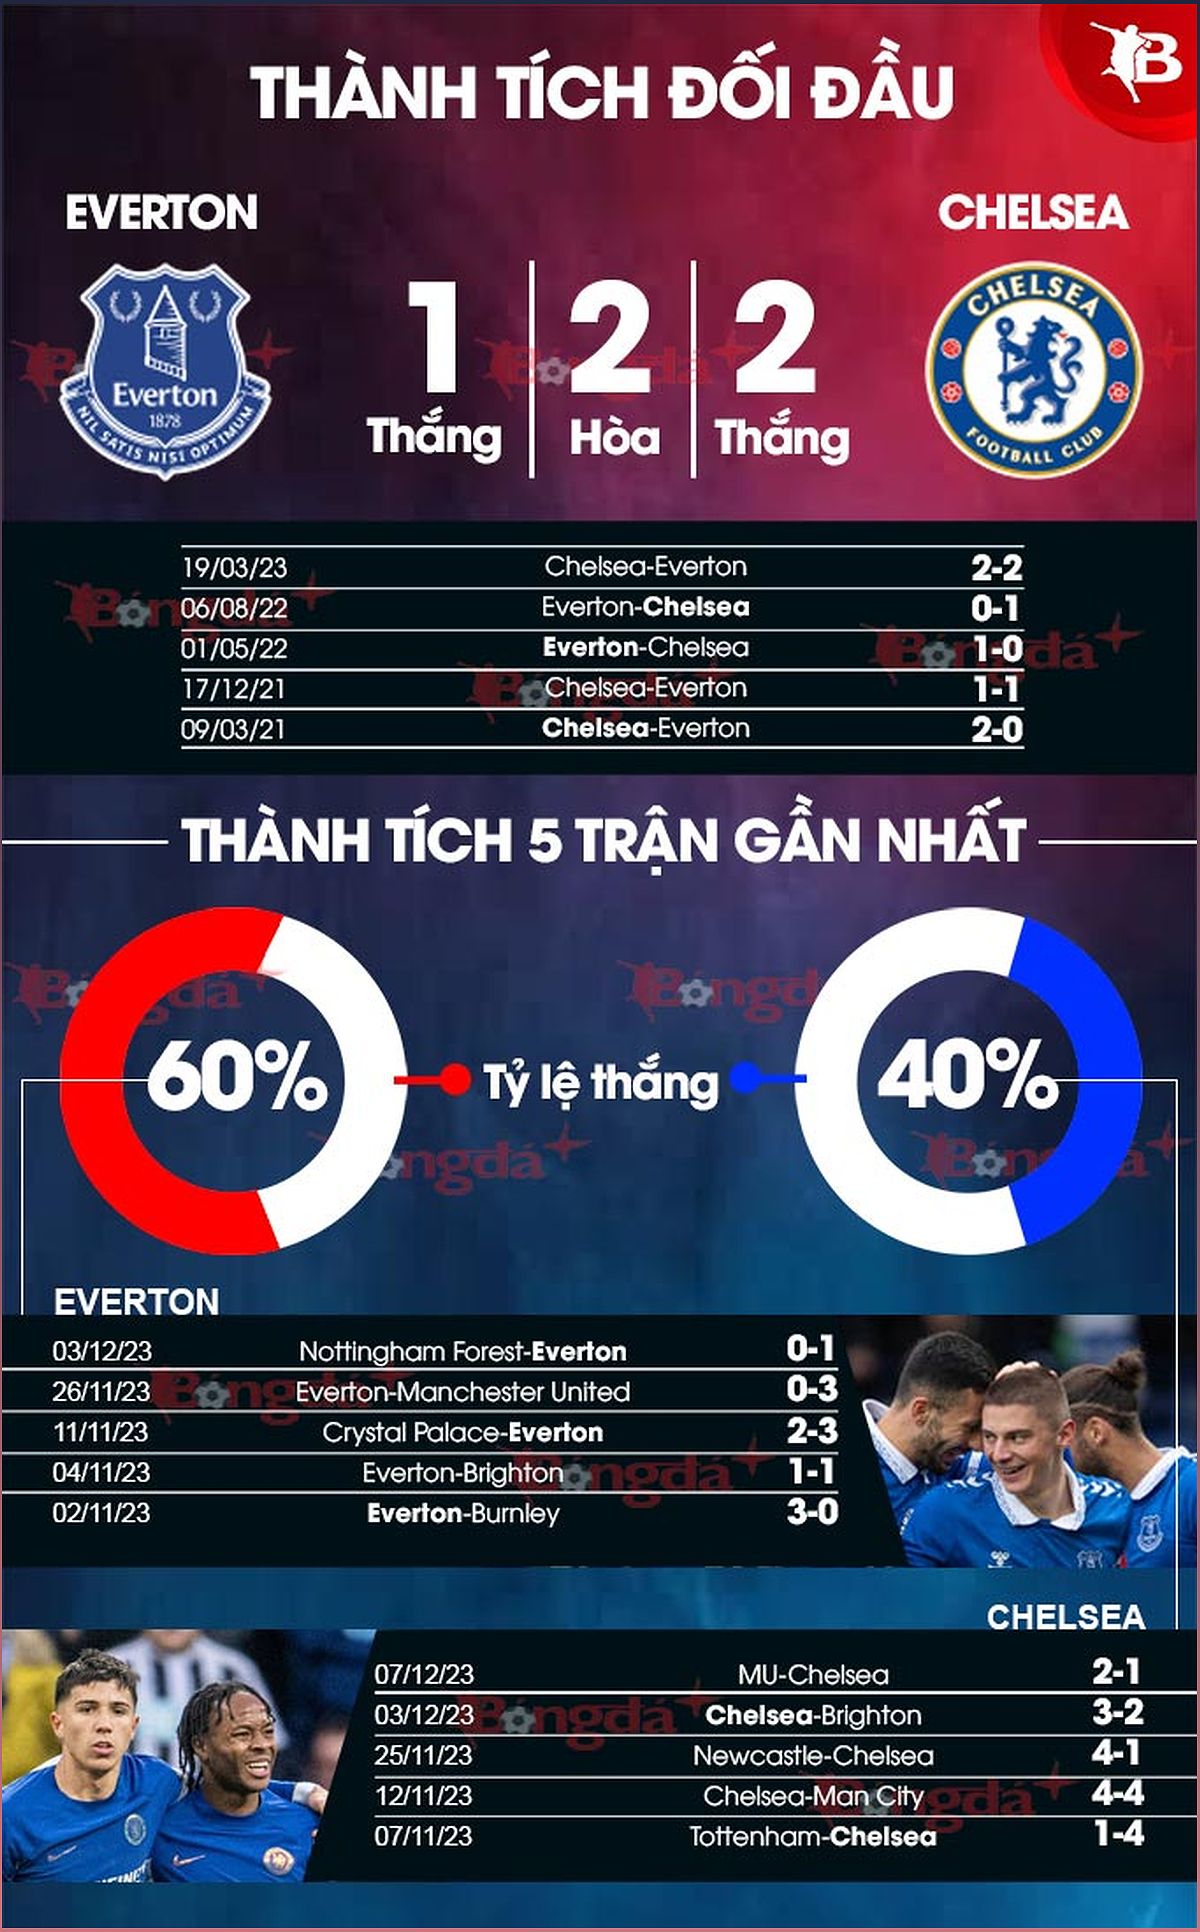 Nhận định trận đấu Everton vs Chelsea: Phân tích lực lượng, dự đoán tỉ số - 1034030328